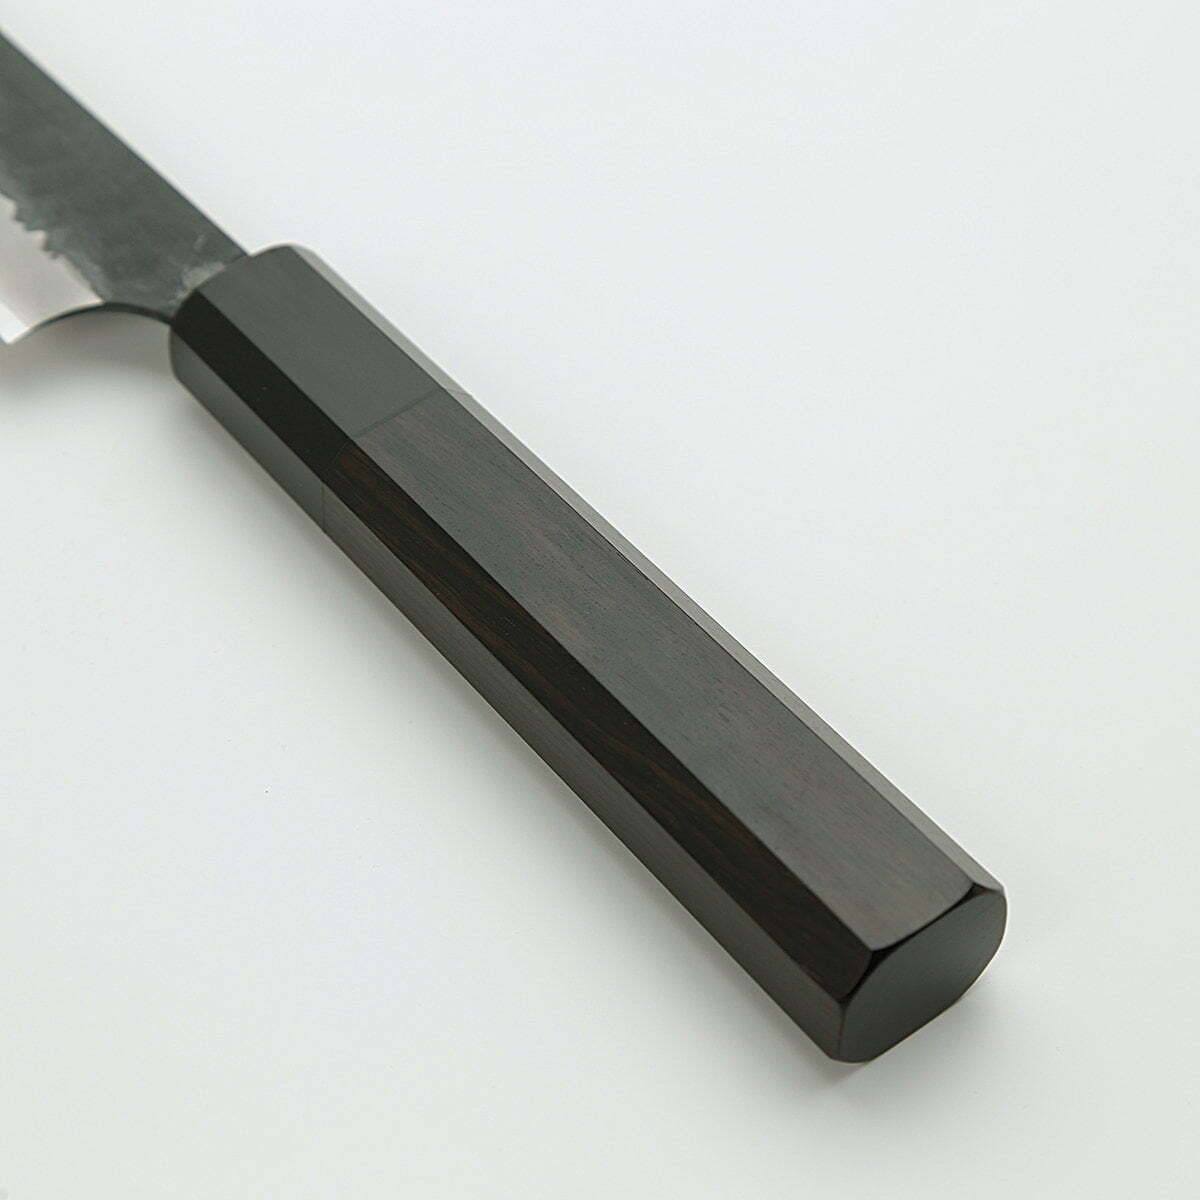 סכין עזר קטנה רב-תכליתית פֶּטִי 150מ״מ מחושלת בעבודת יד 3 שכבות: פלדת פחמן יפנית מתקדמת מסוג R2/SG2 עטופה פלדת אל-חלד גימור קורואיצ׳י שחור עם ריקוע פטיש ניגארה יפן